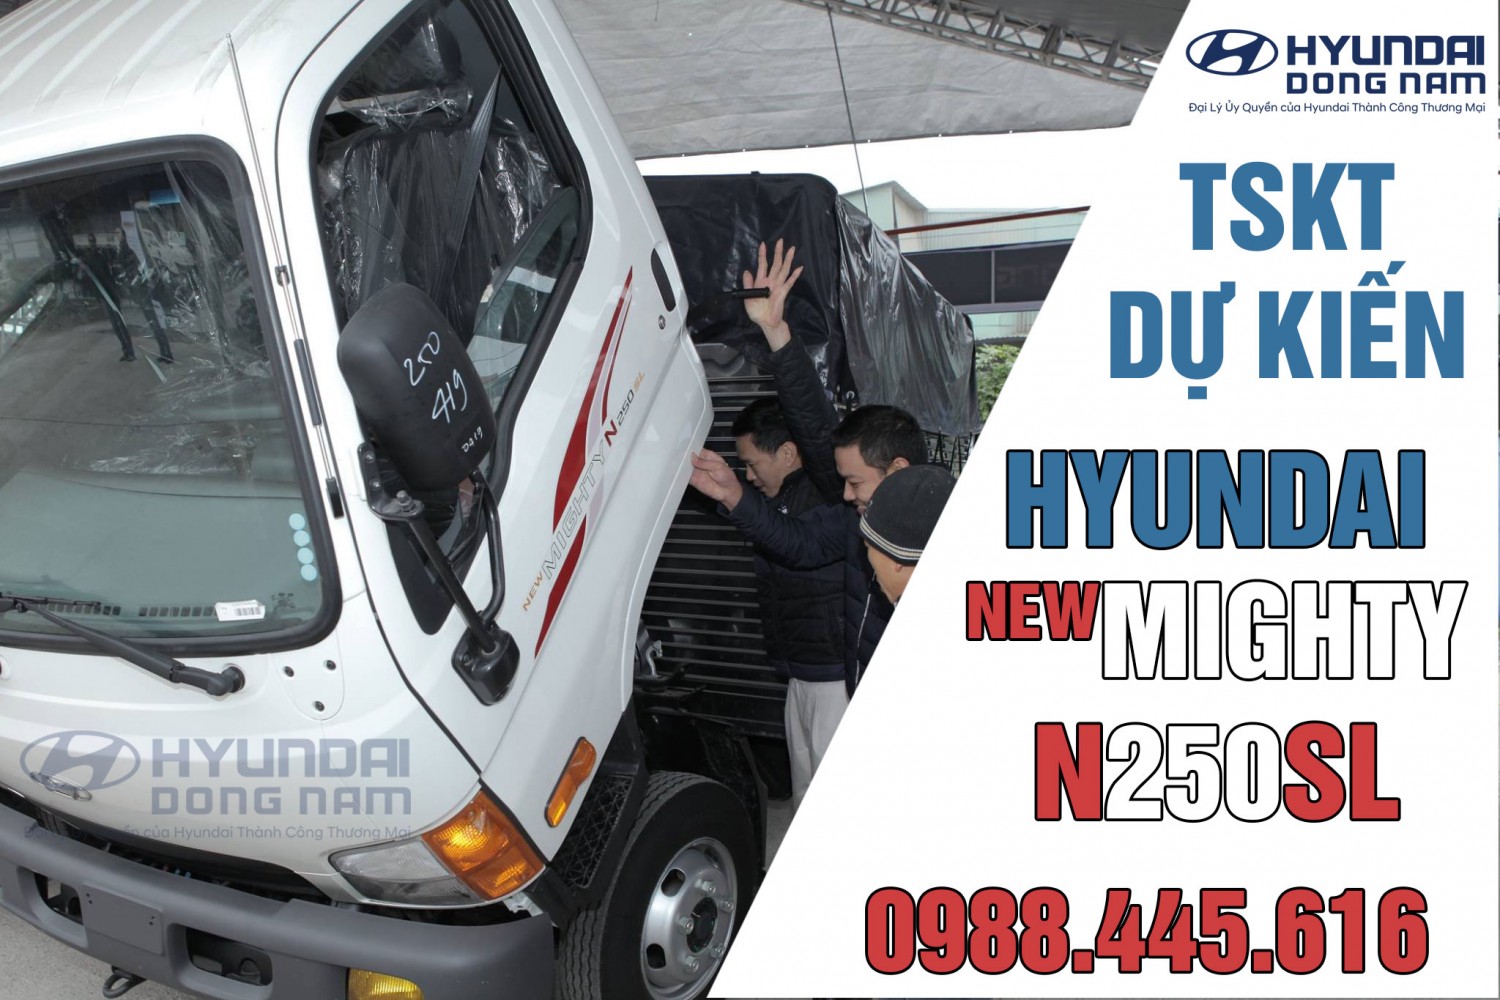 Hyundai N250SL thùng dài - Thông số kỹ thuật và kích thước thùng xe dự kiến